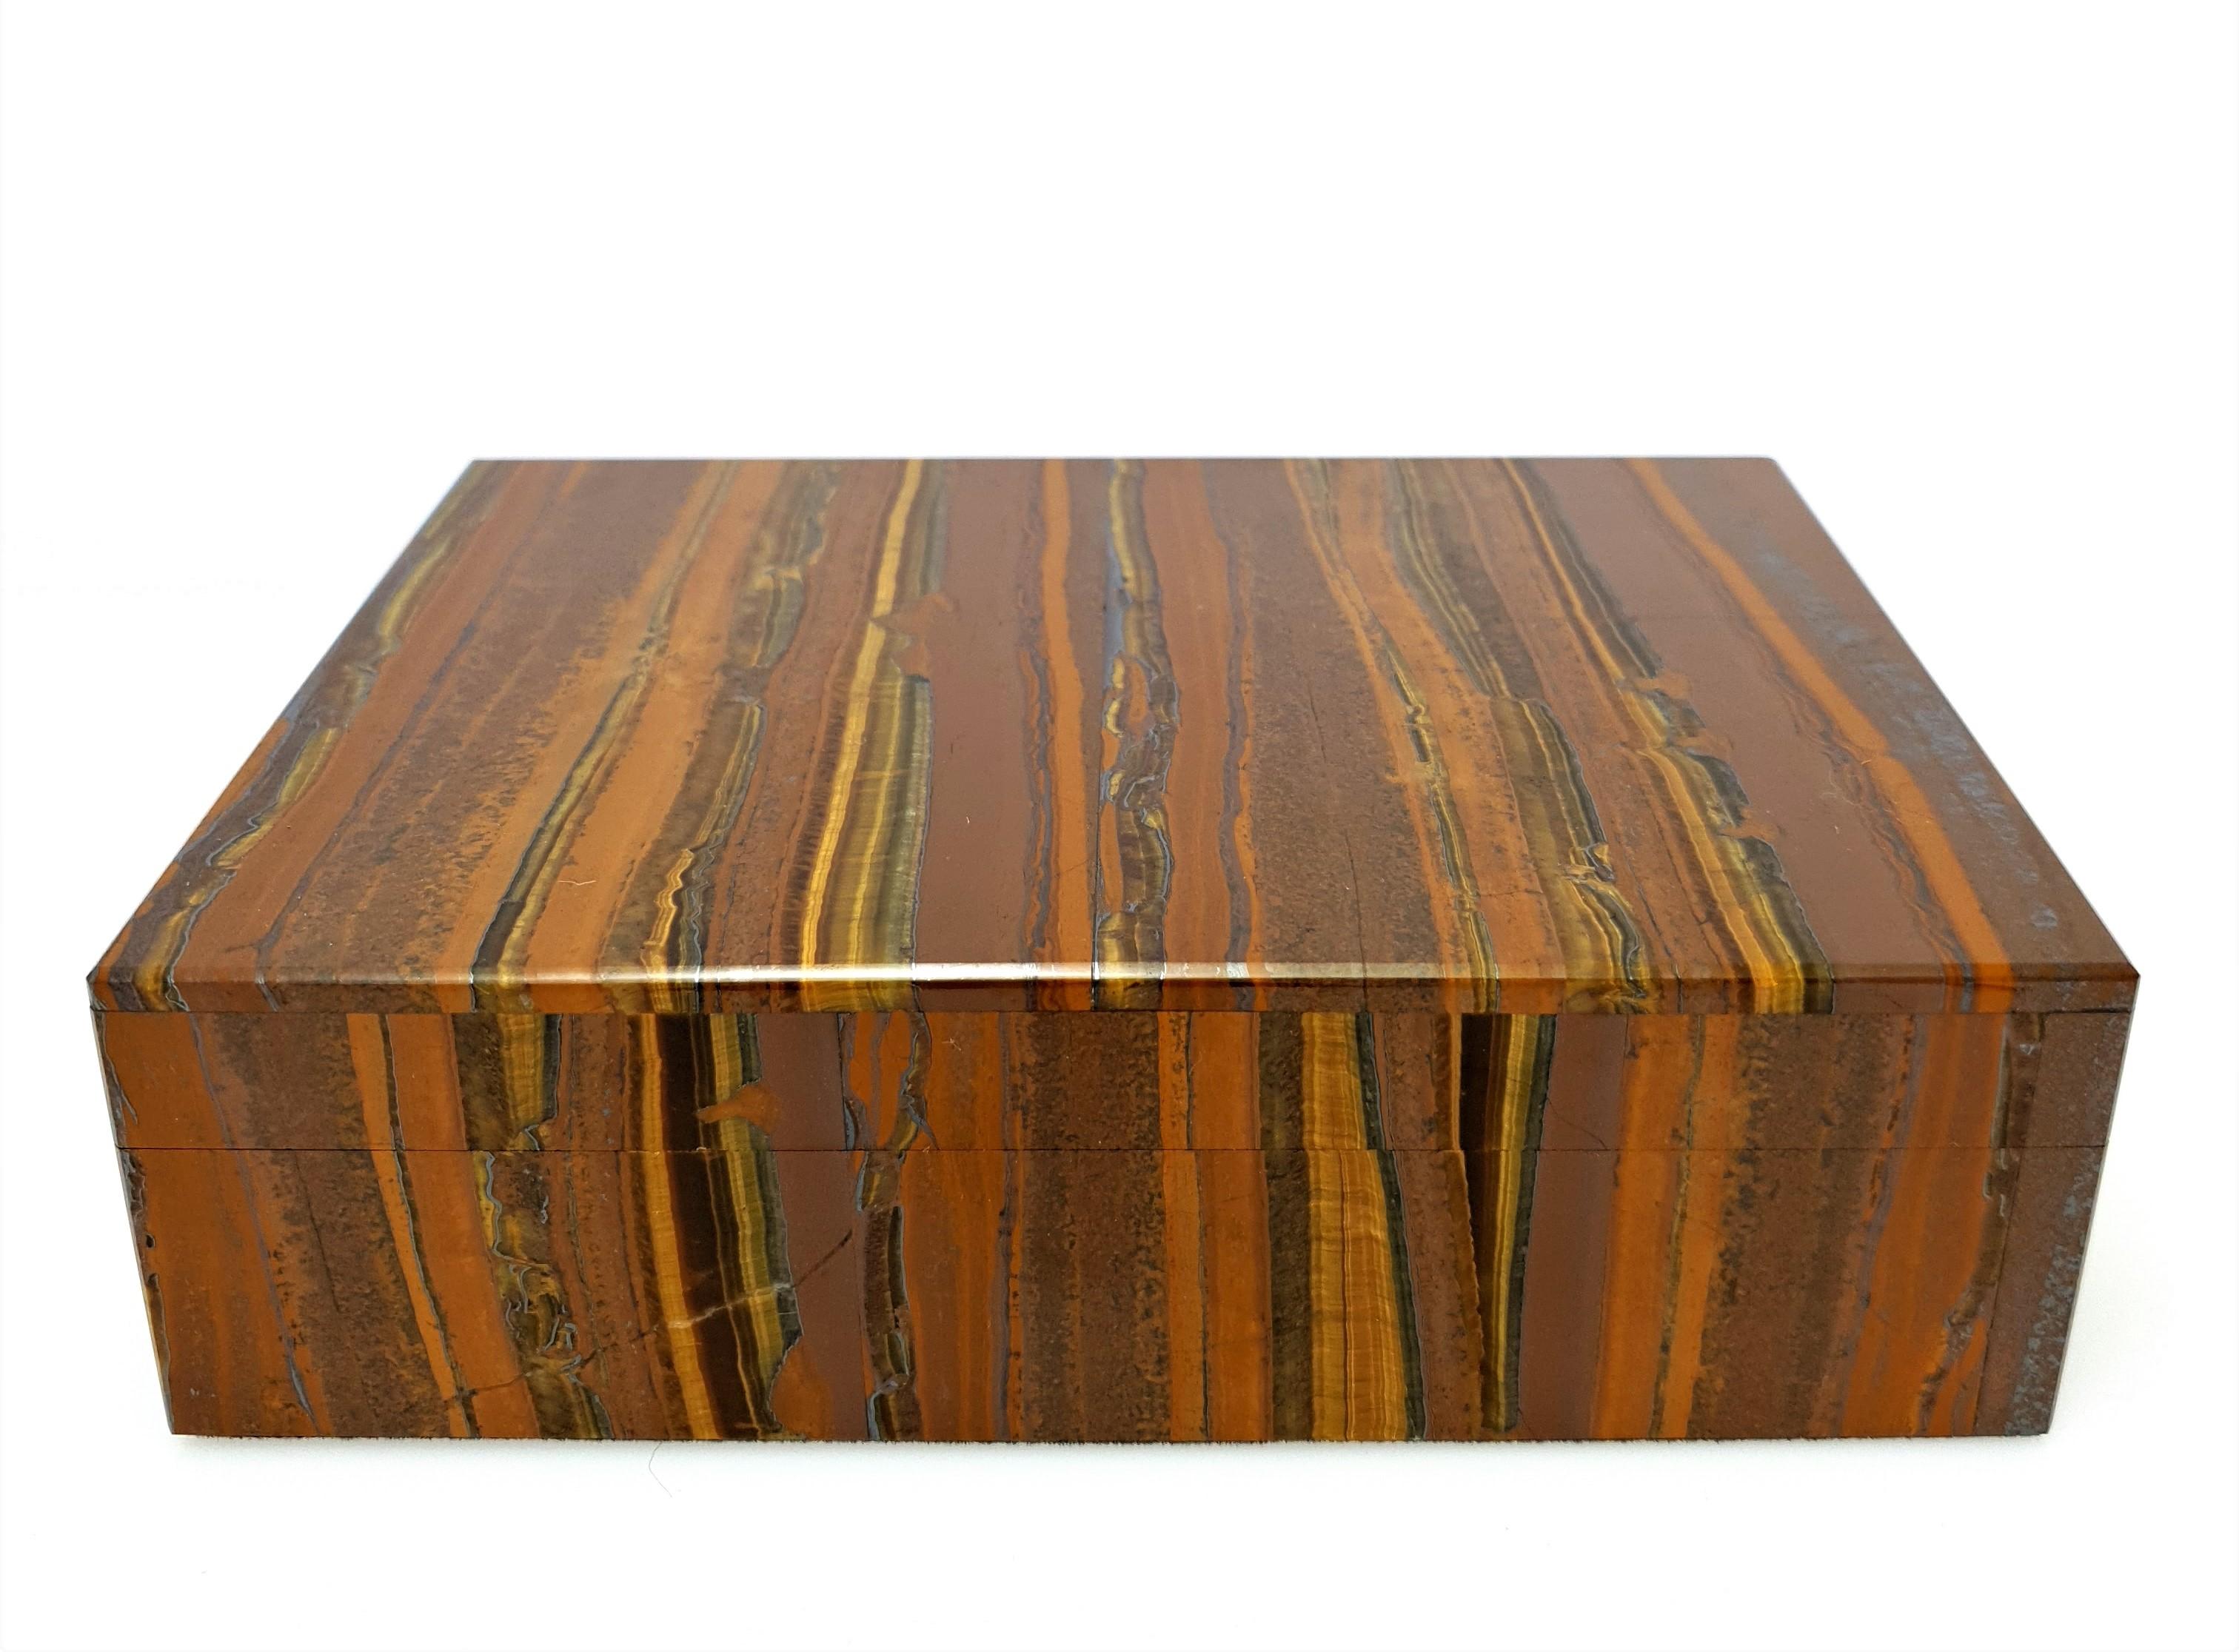 A Natural Handmade Brown Golden Tigeriron Dekorative Schmuck-Box.
Das Muster sieht aus wie ein kunstvolles Gemälde der Natur.
Hervorzuheben ist, dass die Deckplatte aus einem Stück gefertigt ist und nicht aus mehreren Mosaiken besteht.
Das Inlay ist